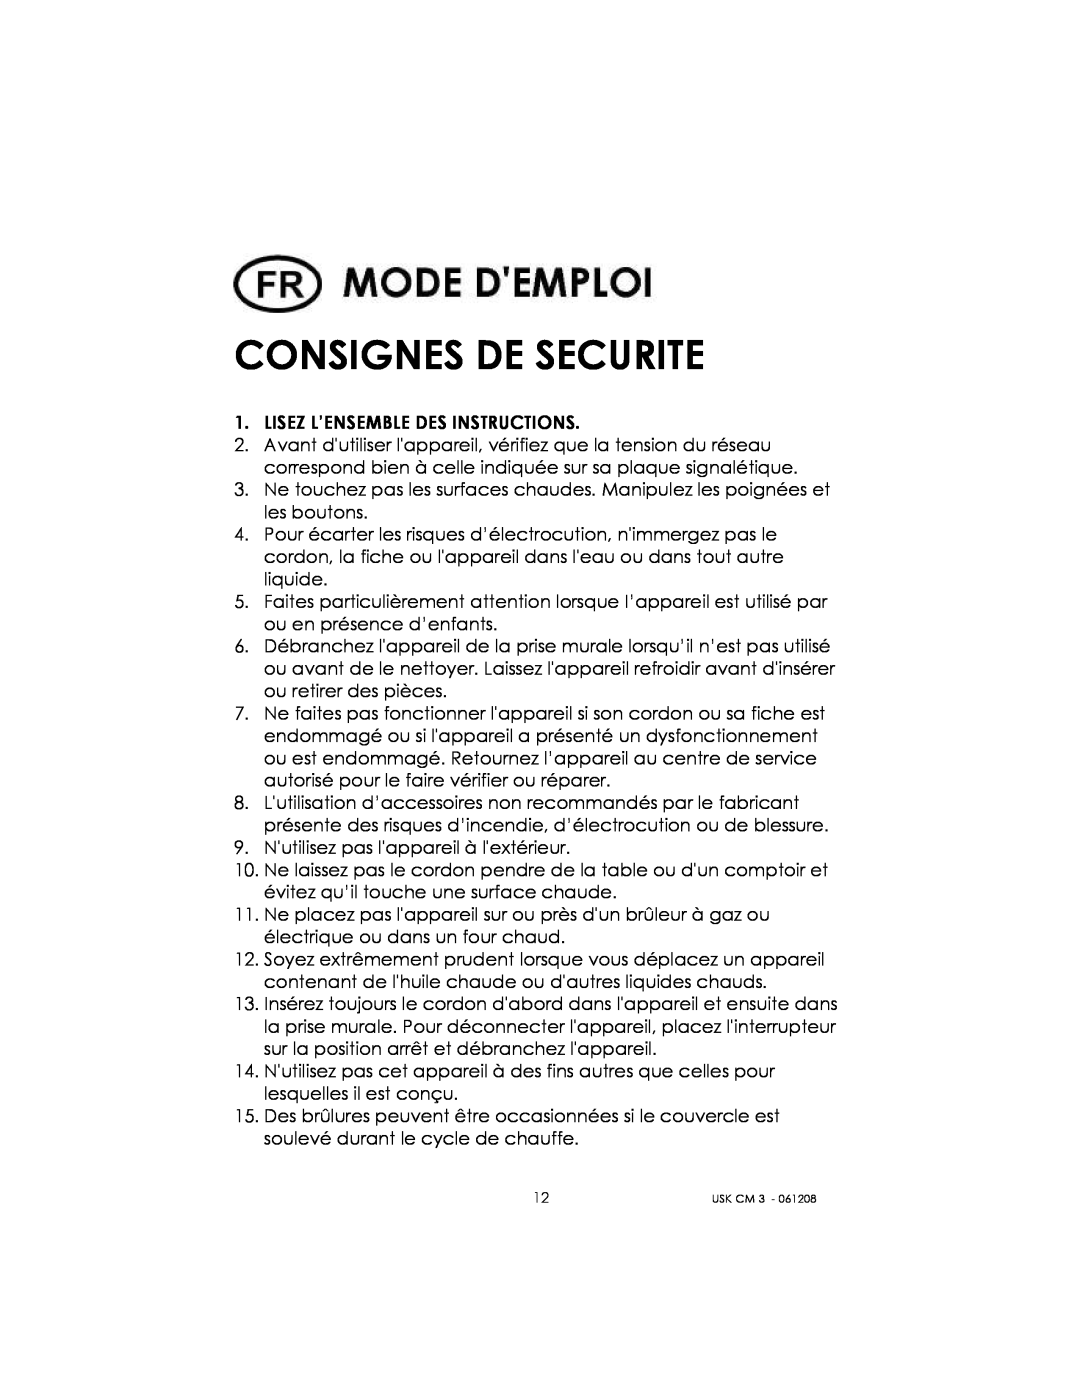 Kalorik USK CM 3 manual Consignes De Securite 